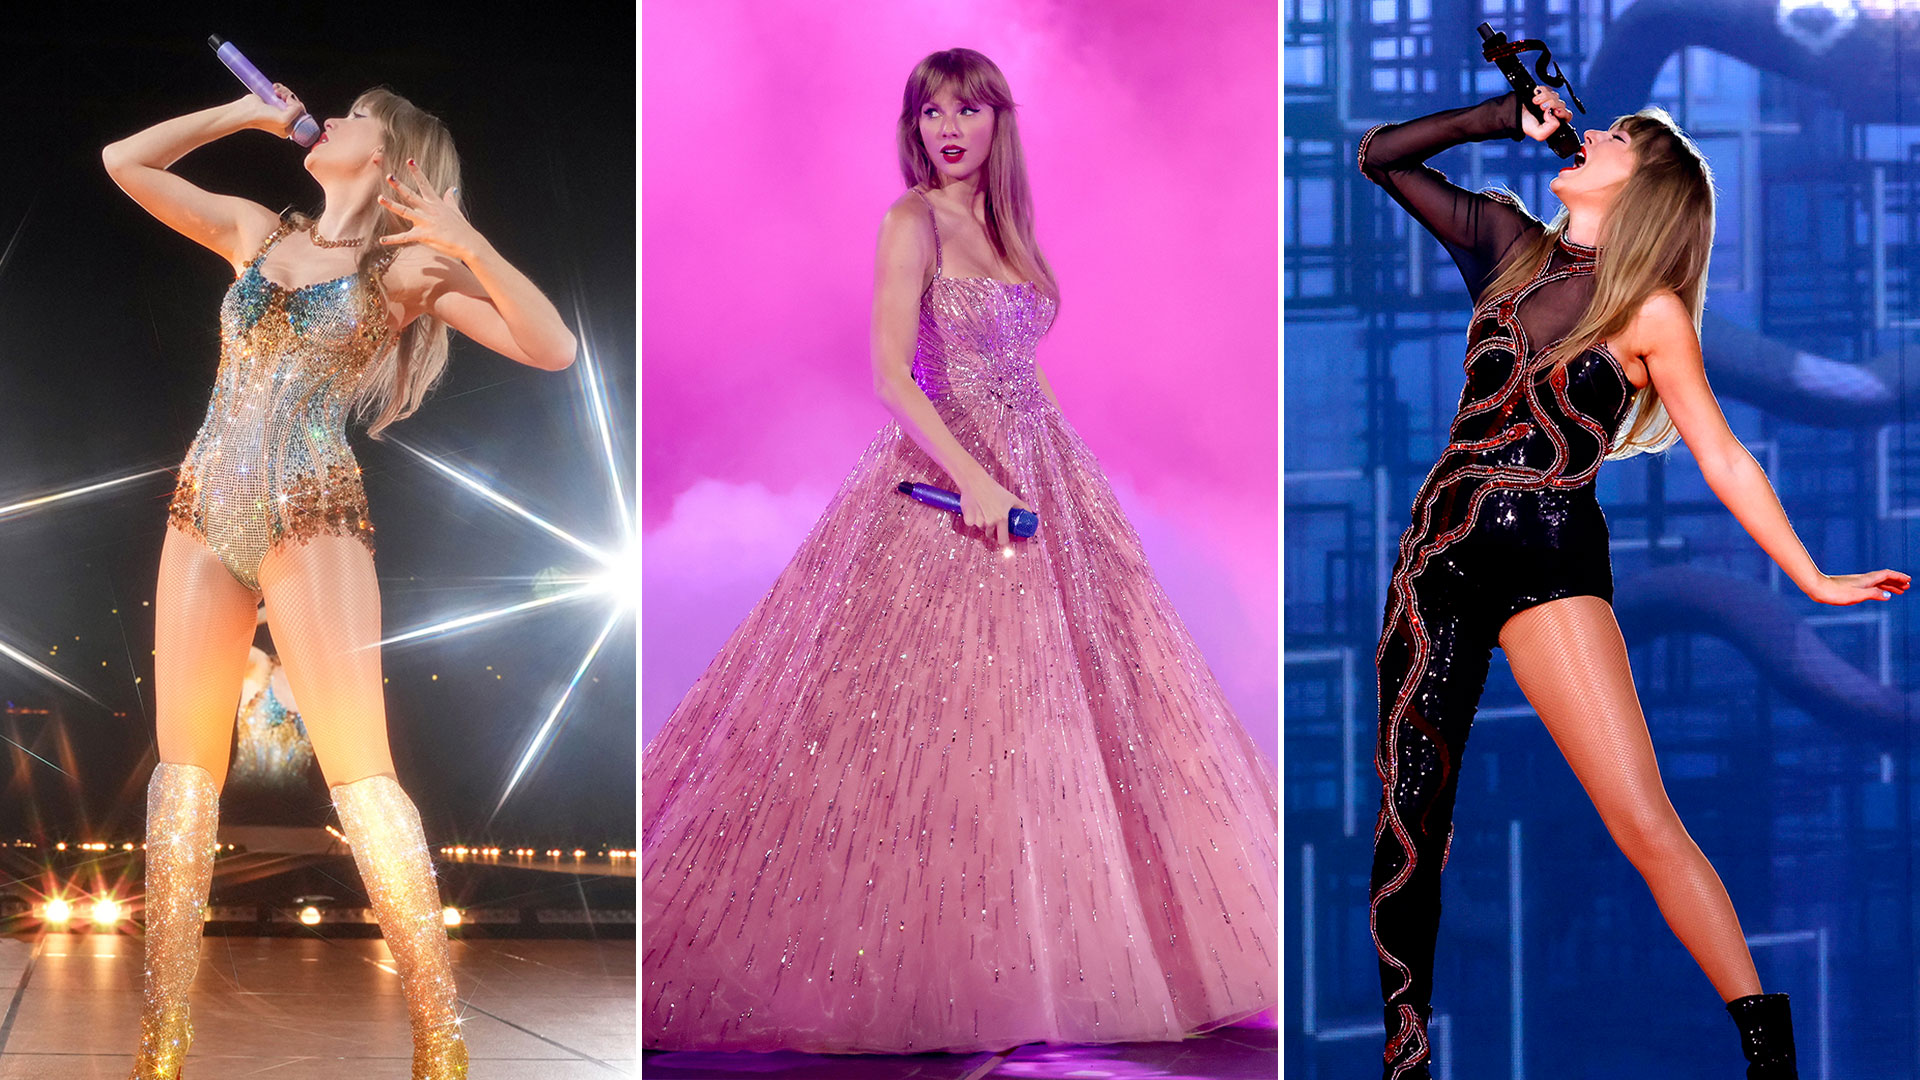 De brillos a lentejuelas: Taylor Swift apuesta a una lujosa colección de vestidos para su nueva gira mundial